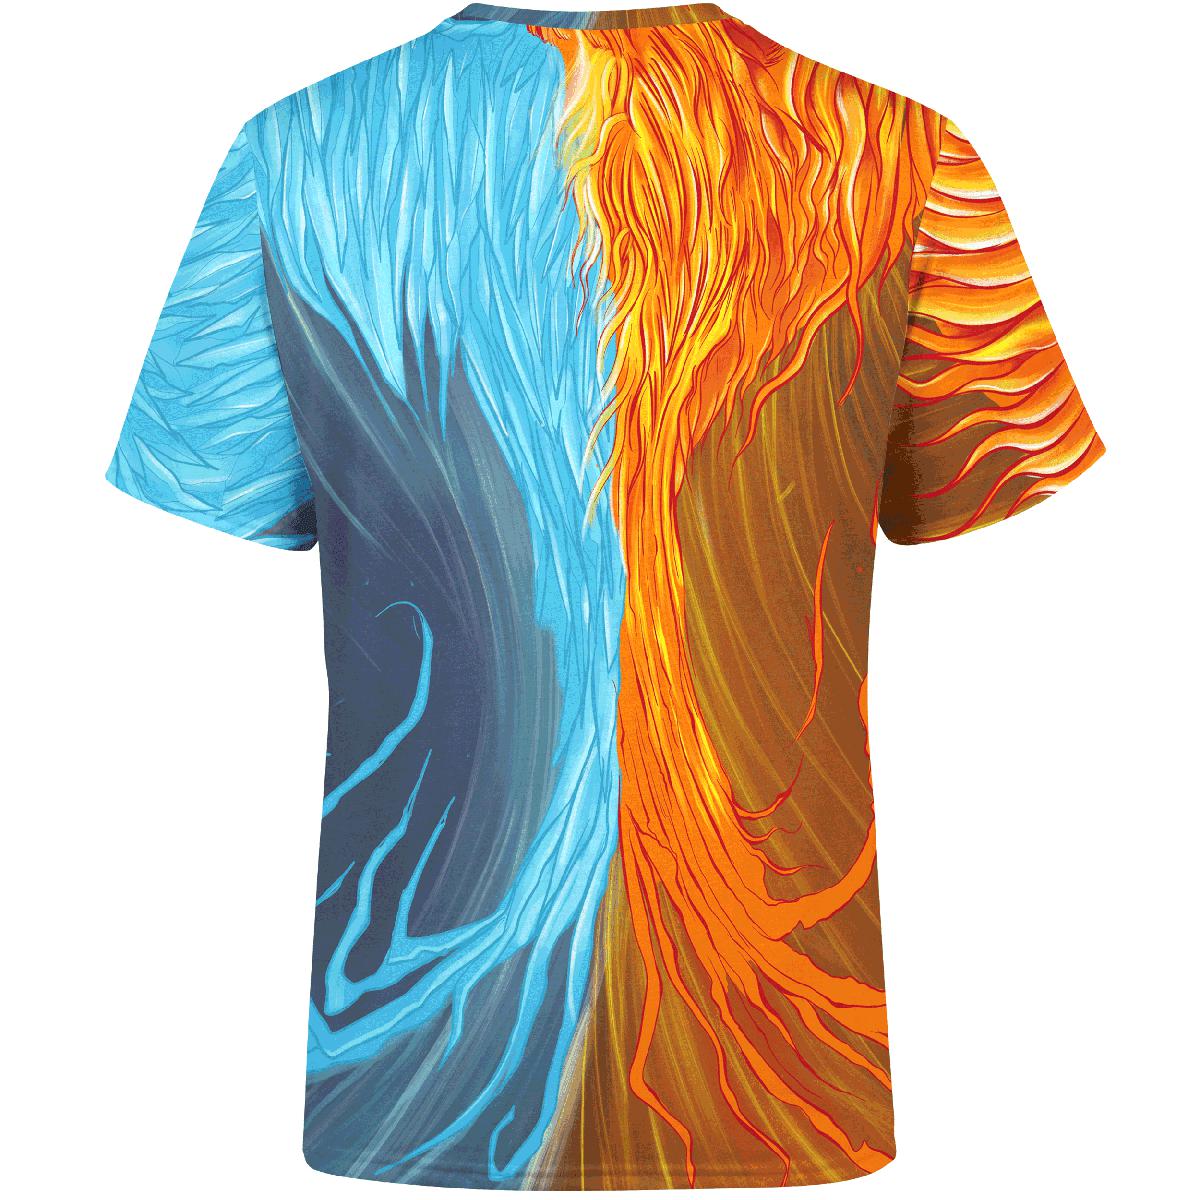 Shirt Fire & Ice Phoenix Unisex Shirt